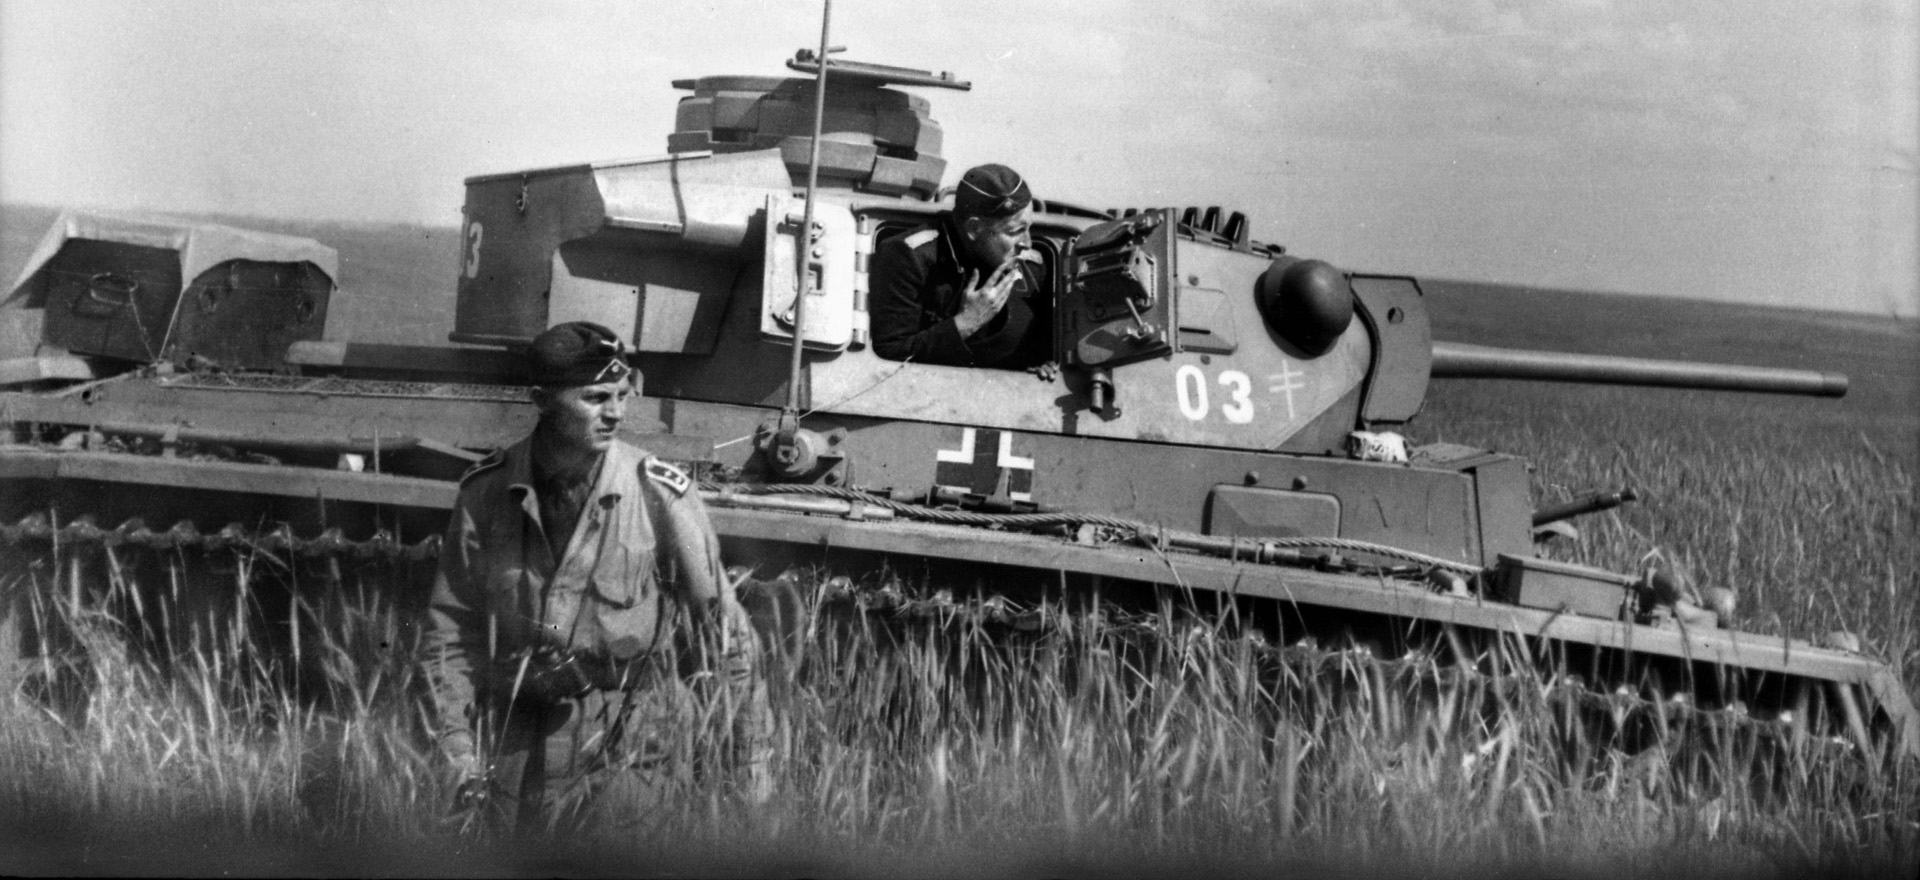 德国油轮站在俄罗斯沃罗涅日附近的大草原后新兴炮塔的他的号。第三坦克。在1942年的夏天,希特勒安装一个装甲推力向南沿着东线,它导致毁灭。